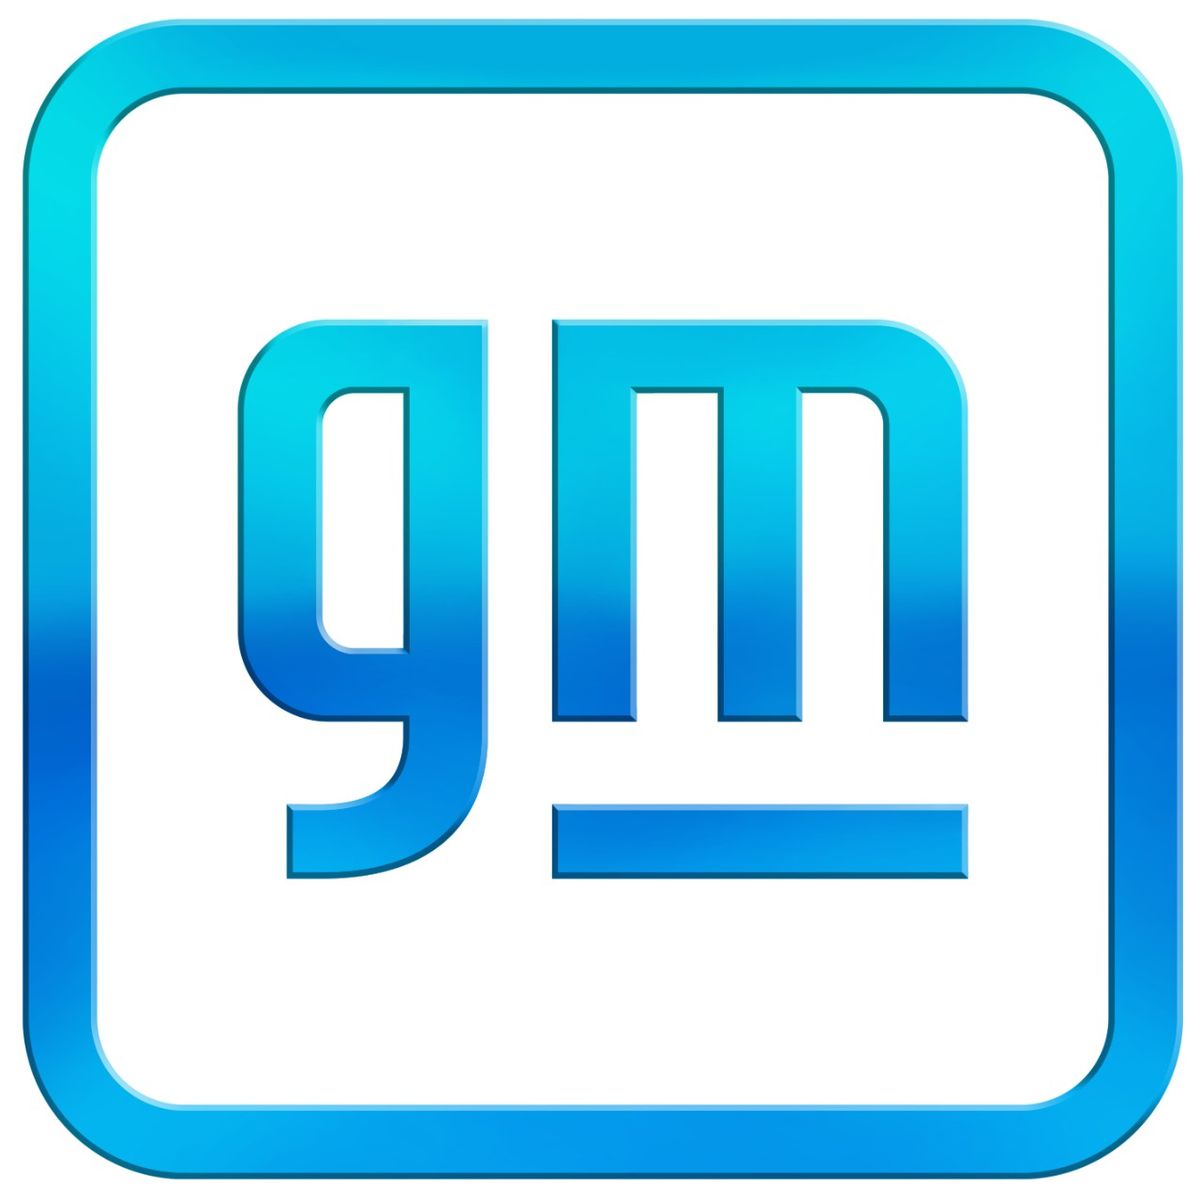 general motors gets a new logo